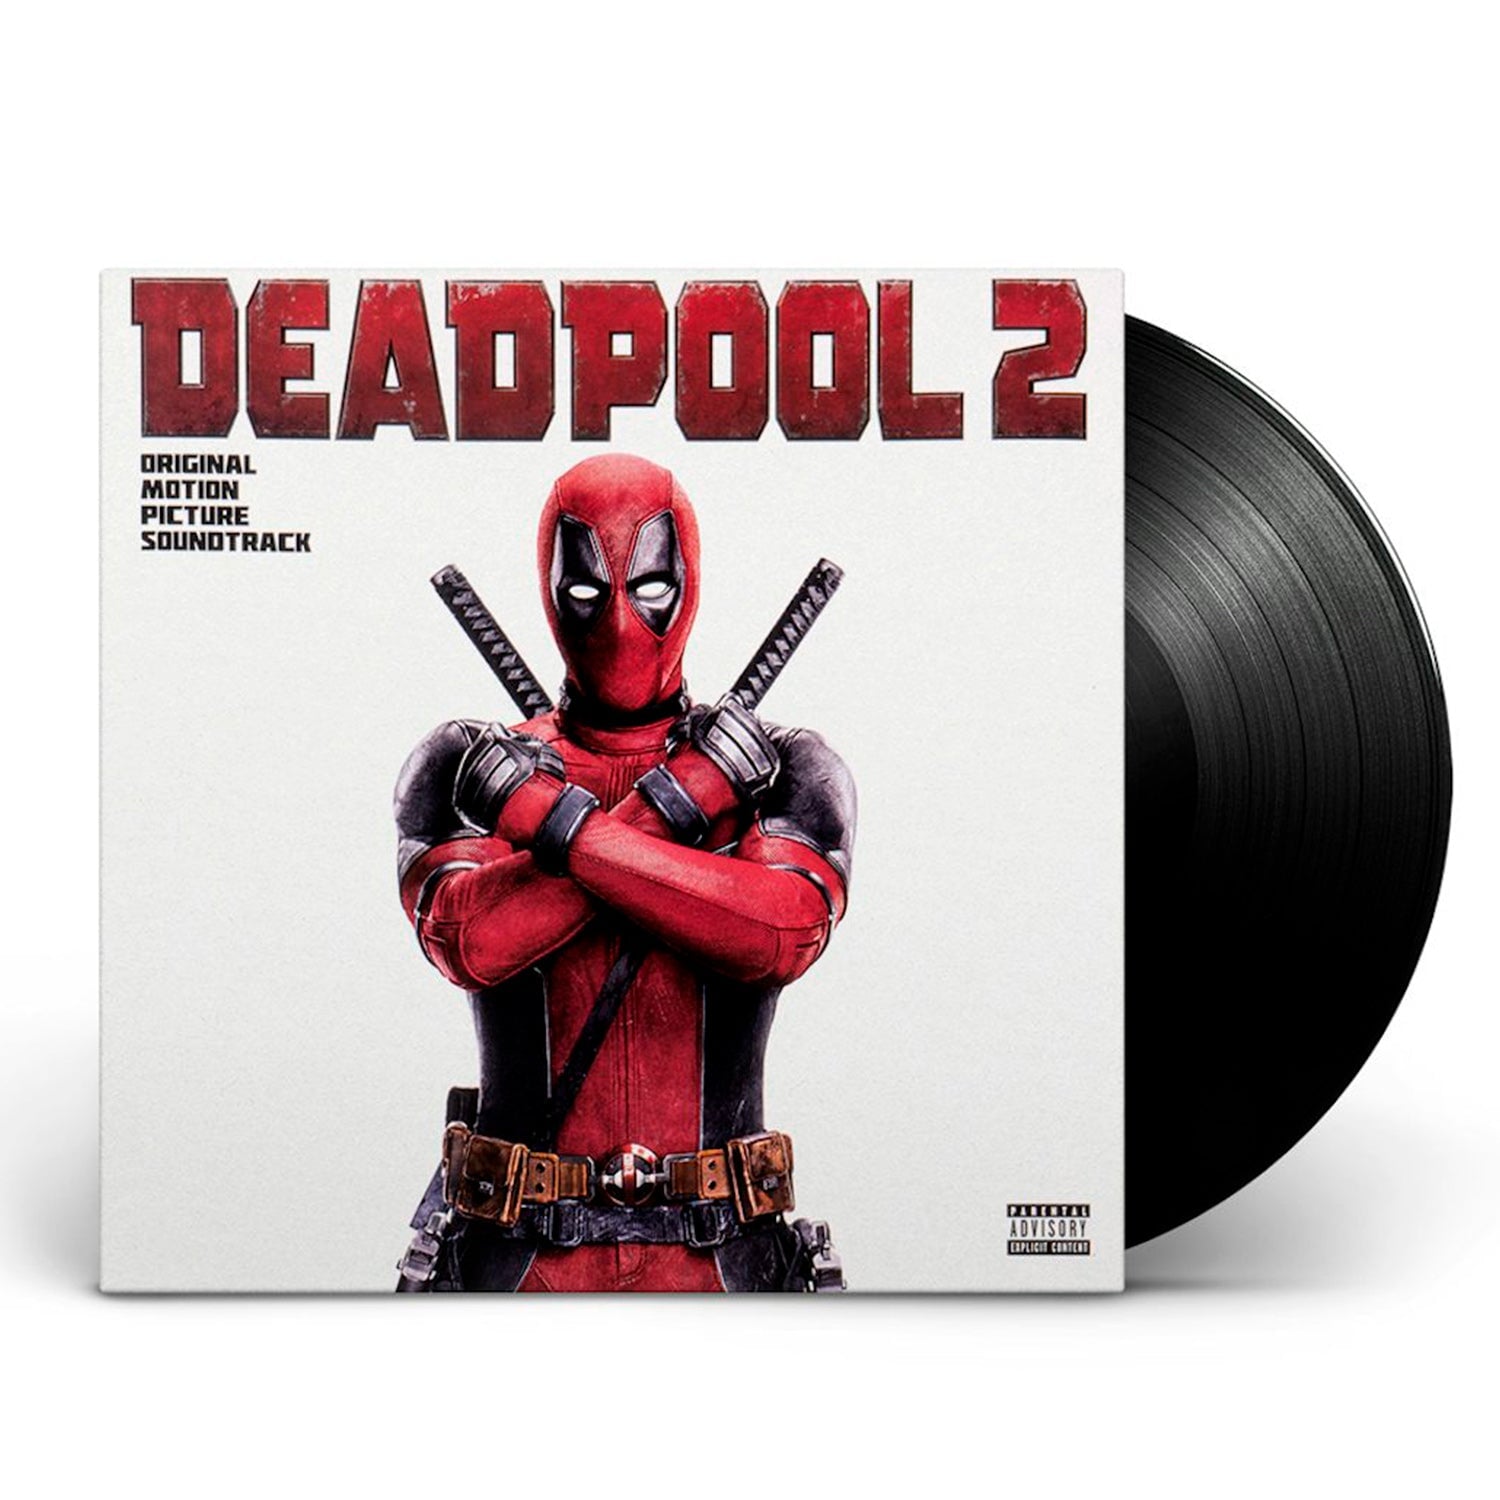 Deadpool 2 (Original Motion Picture Soundtrack) (Vinyl LP)